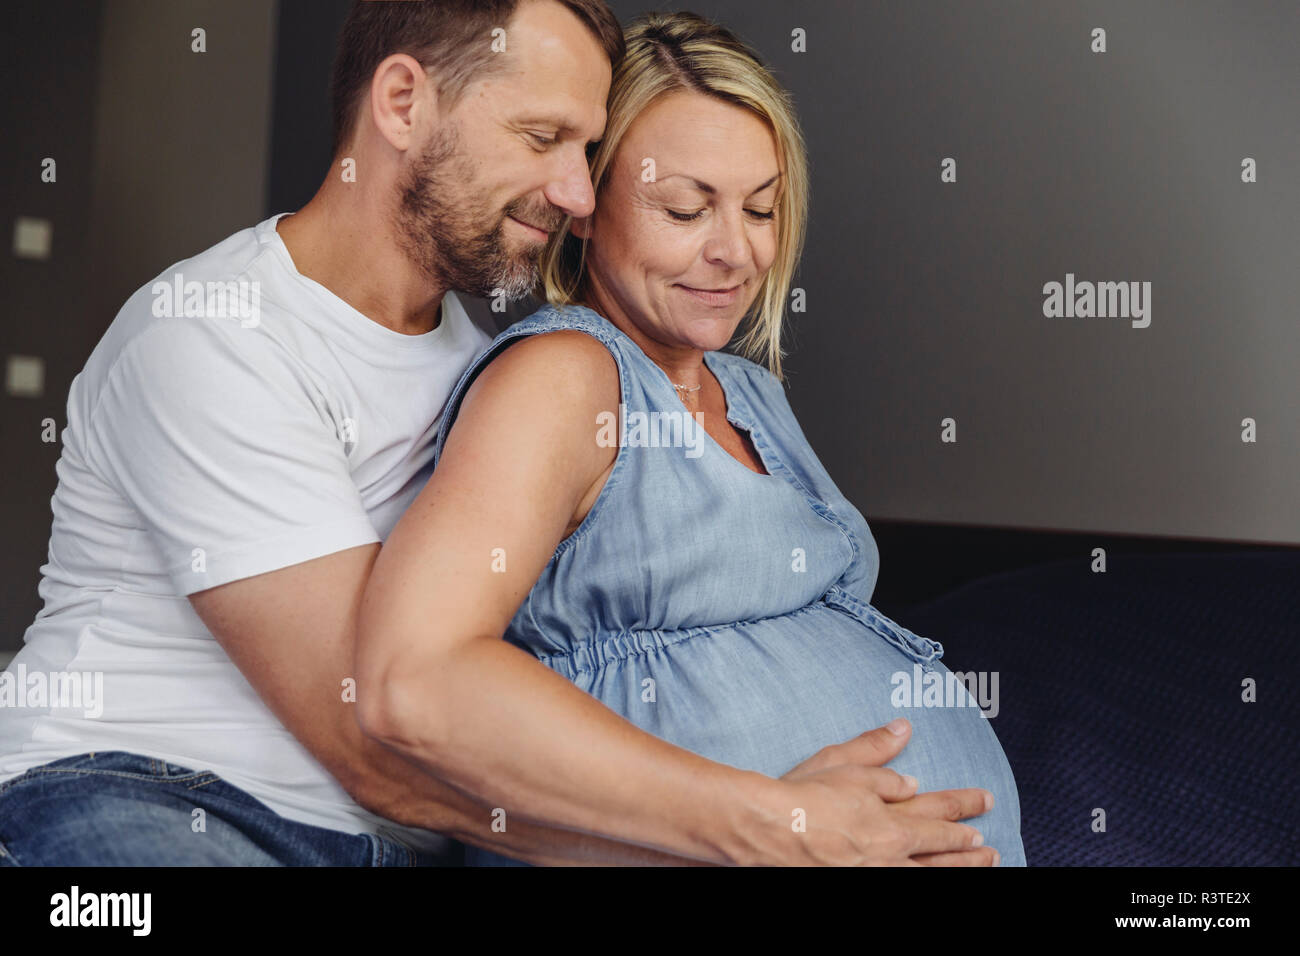 Reifer Mann und seine schwangere reife Frau sitzen auf dem Bett ihr Bauch berühren. Stockfoto